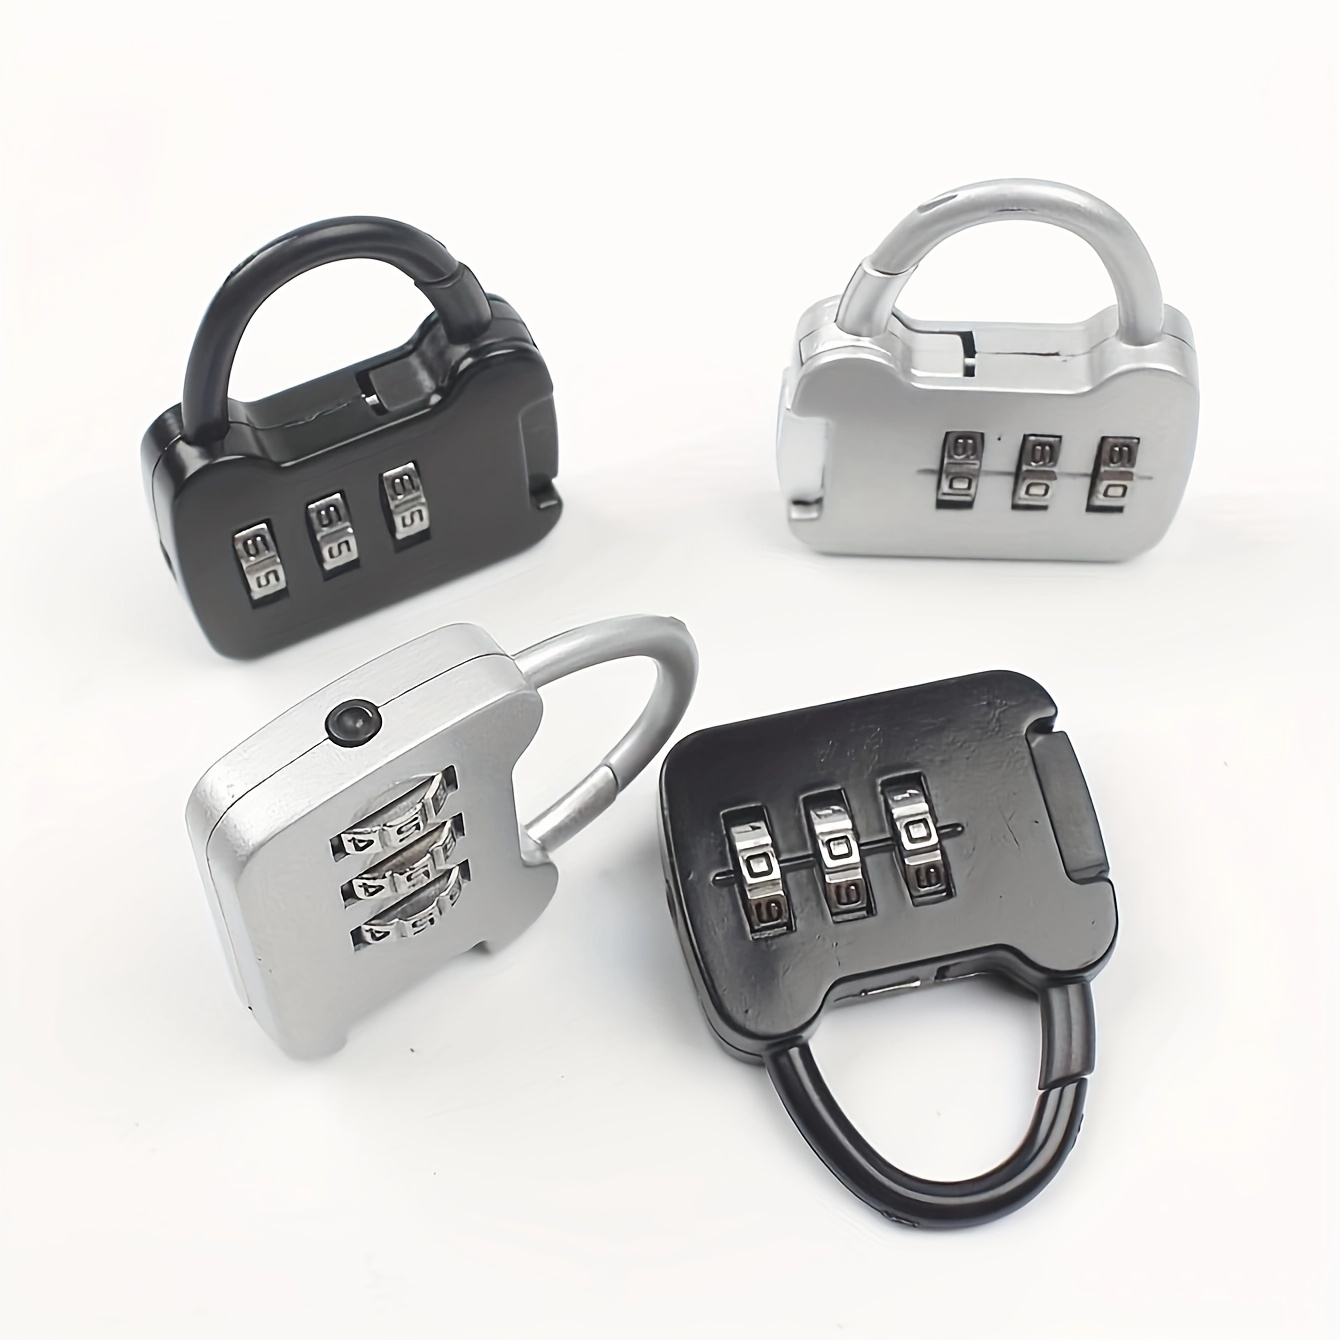 Suitcase Locks with Keys, 5Pcs Small Luggage Padlocks Multicolor